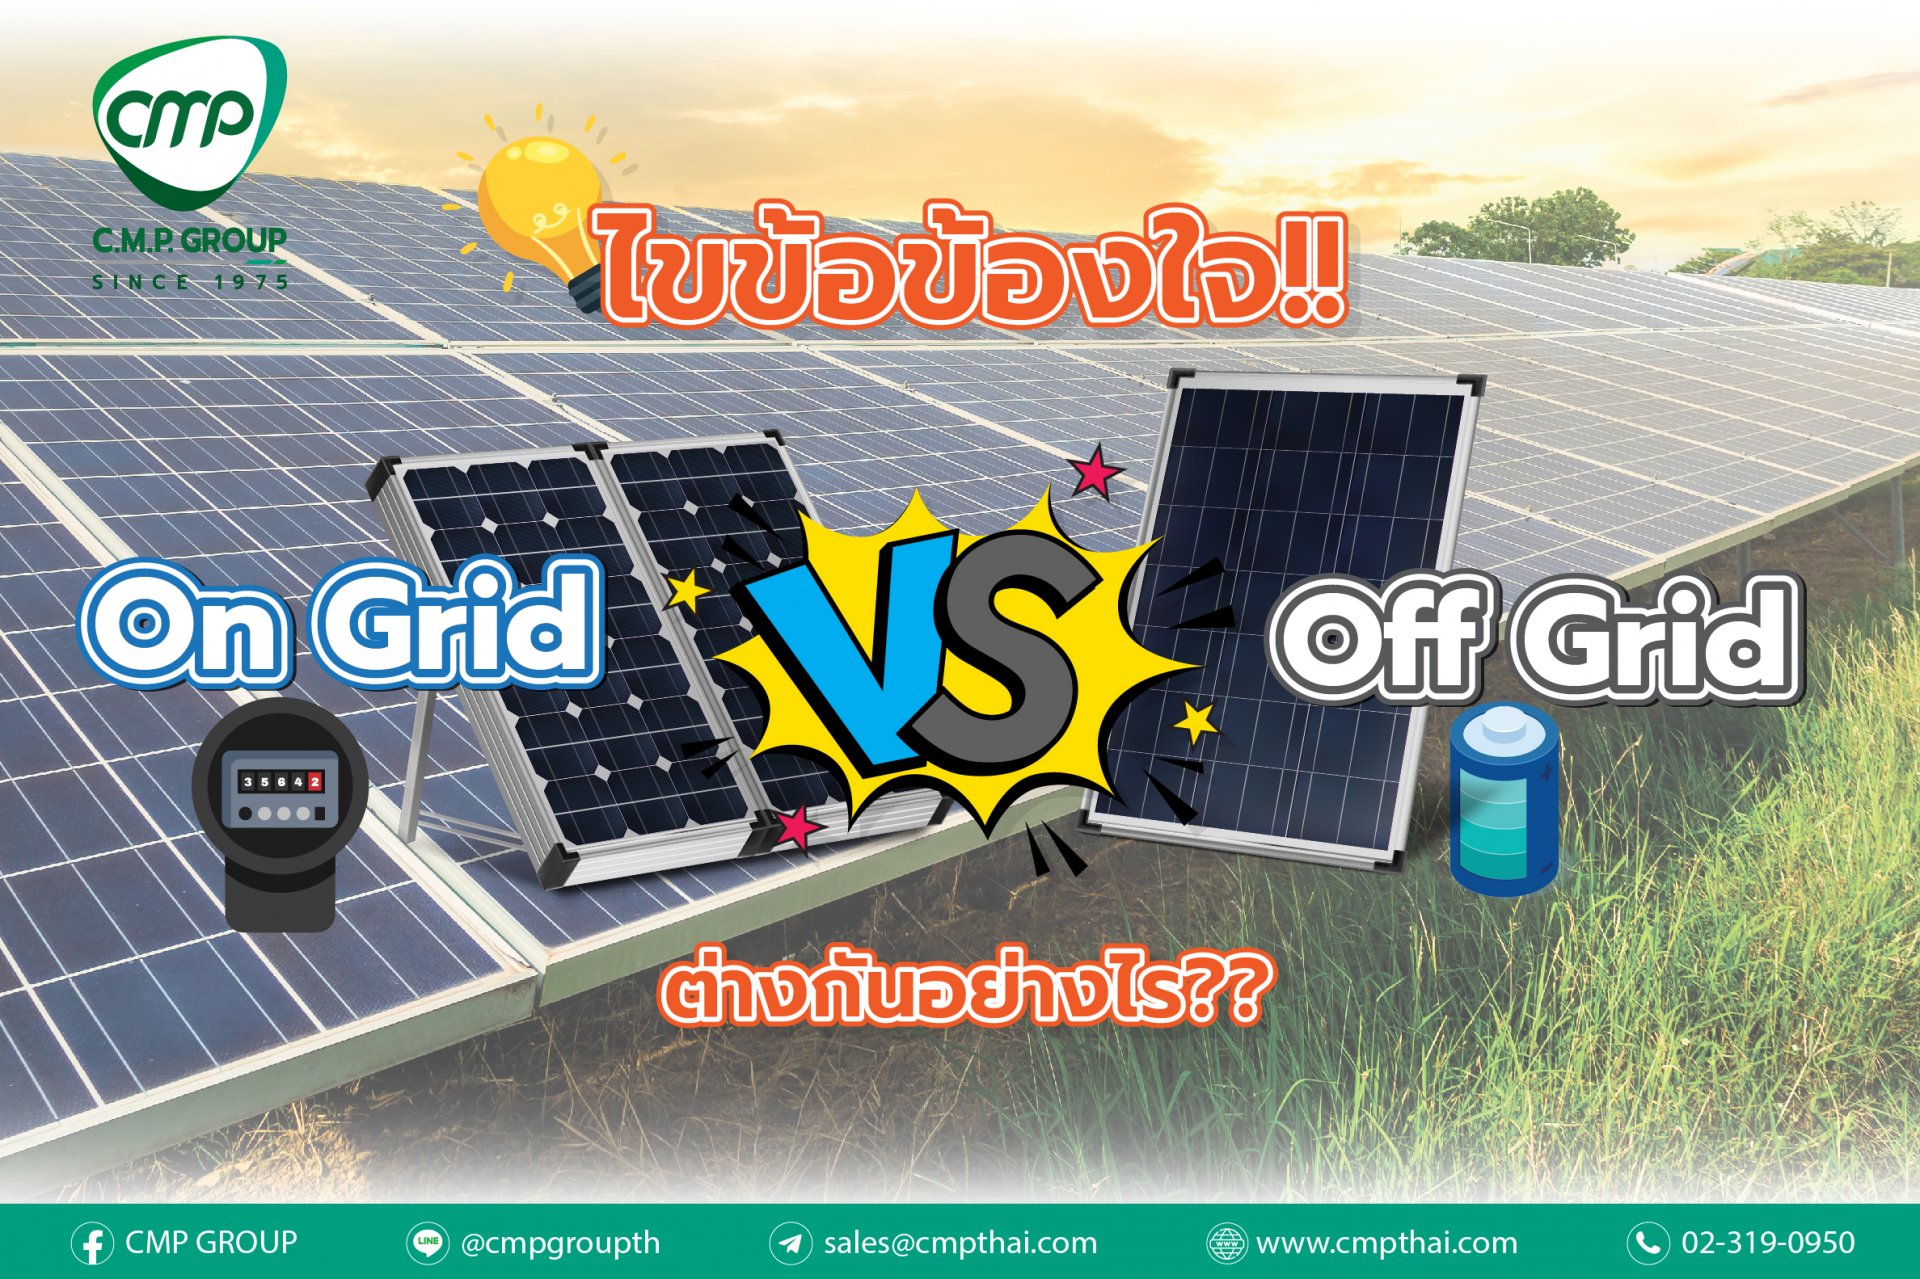 ไขข้อข้องใจ ‘On-grid’ และ ‘Off-grid’  ต่างกันอย่างไร